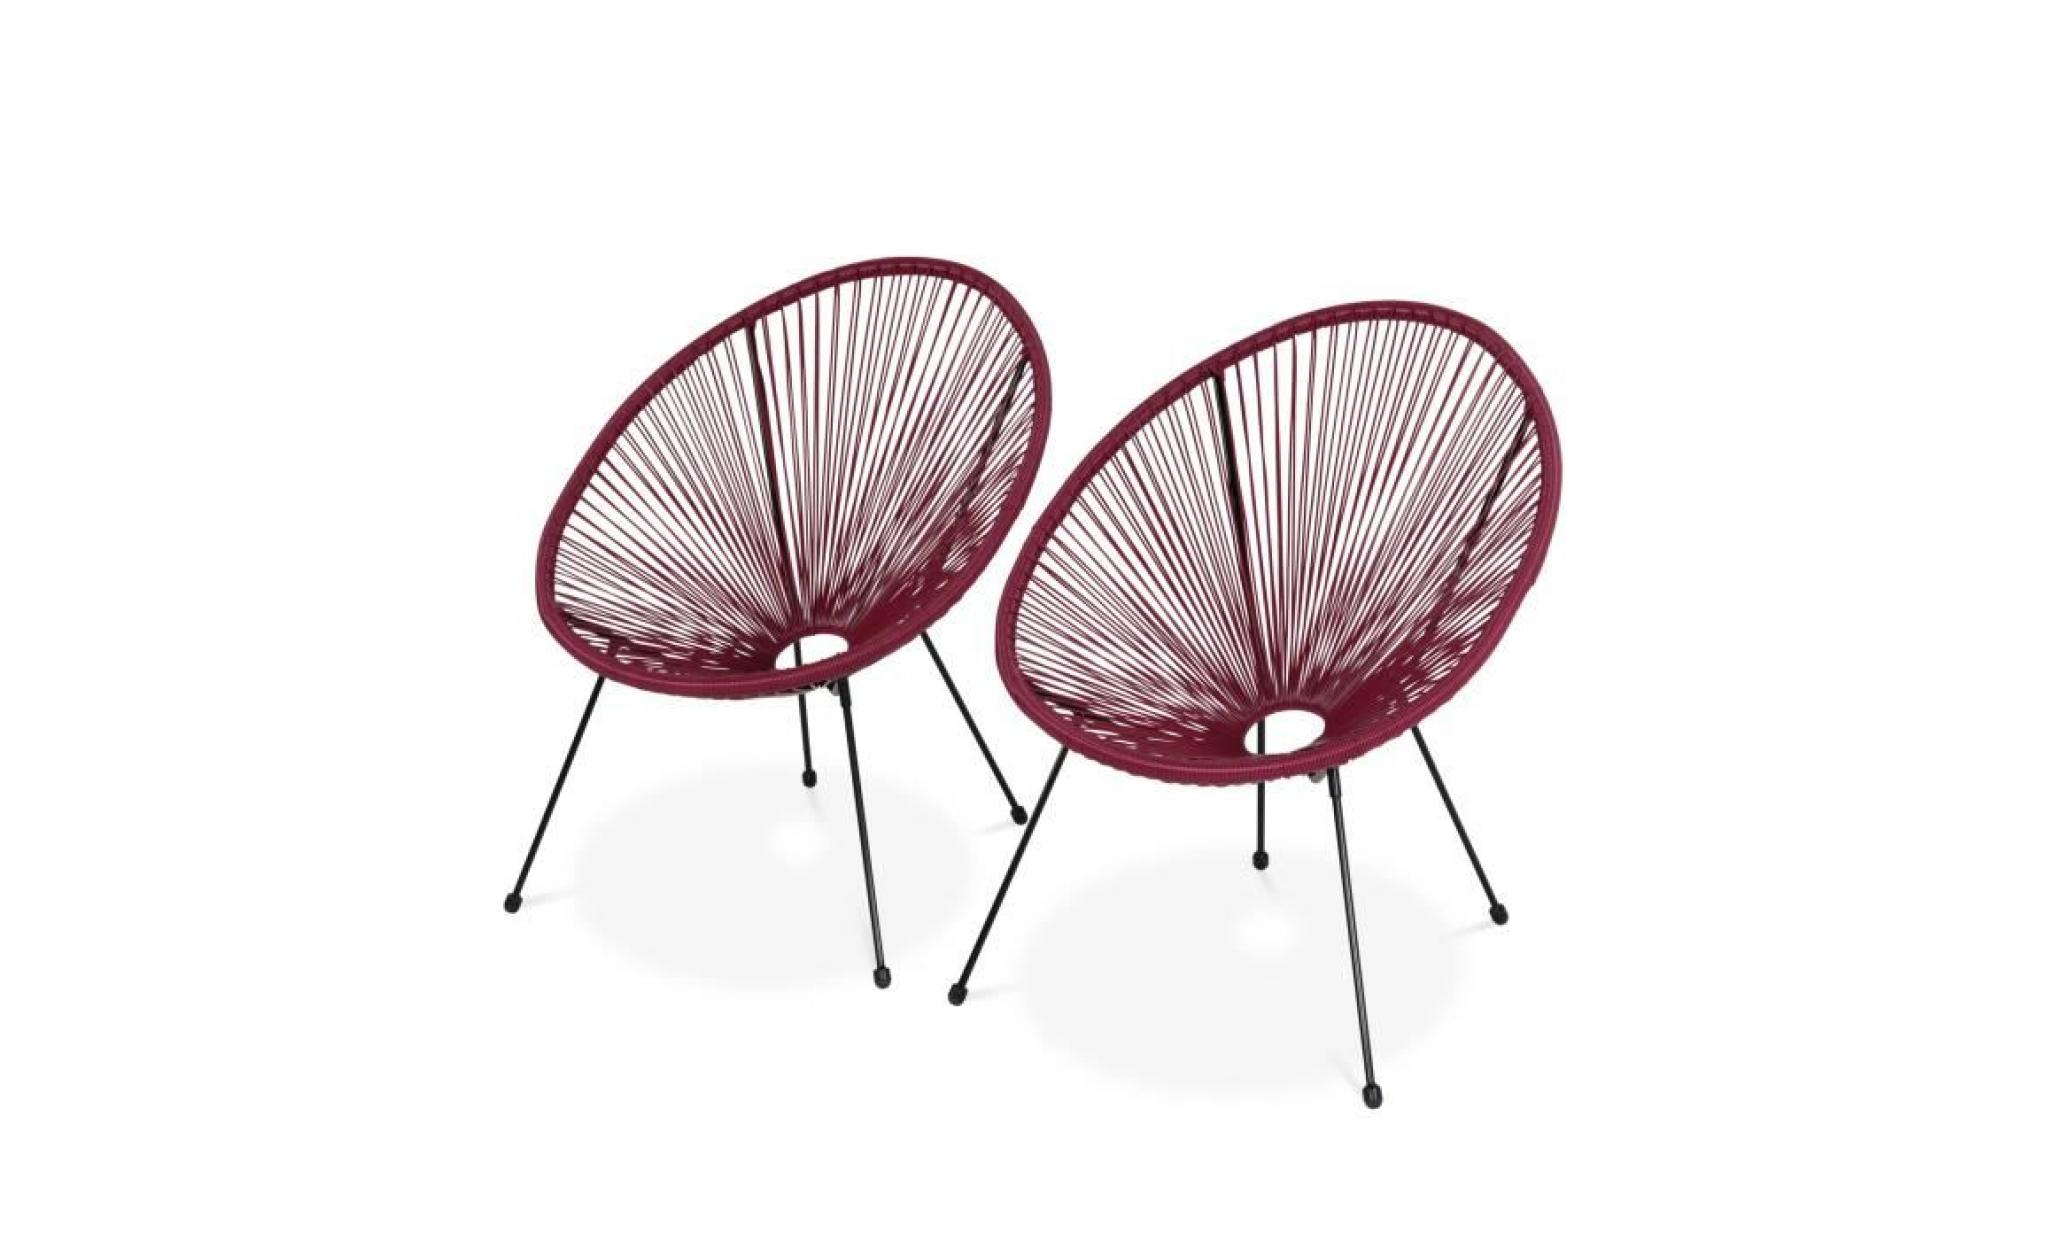 lot de 2 fauteuils design oeuf   acapulco bordeaux   fauteuils 4 pieds design rétro, cordage plastique, intérieur / extérieur